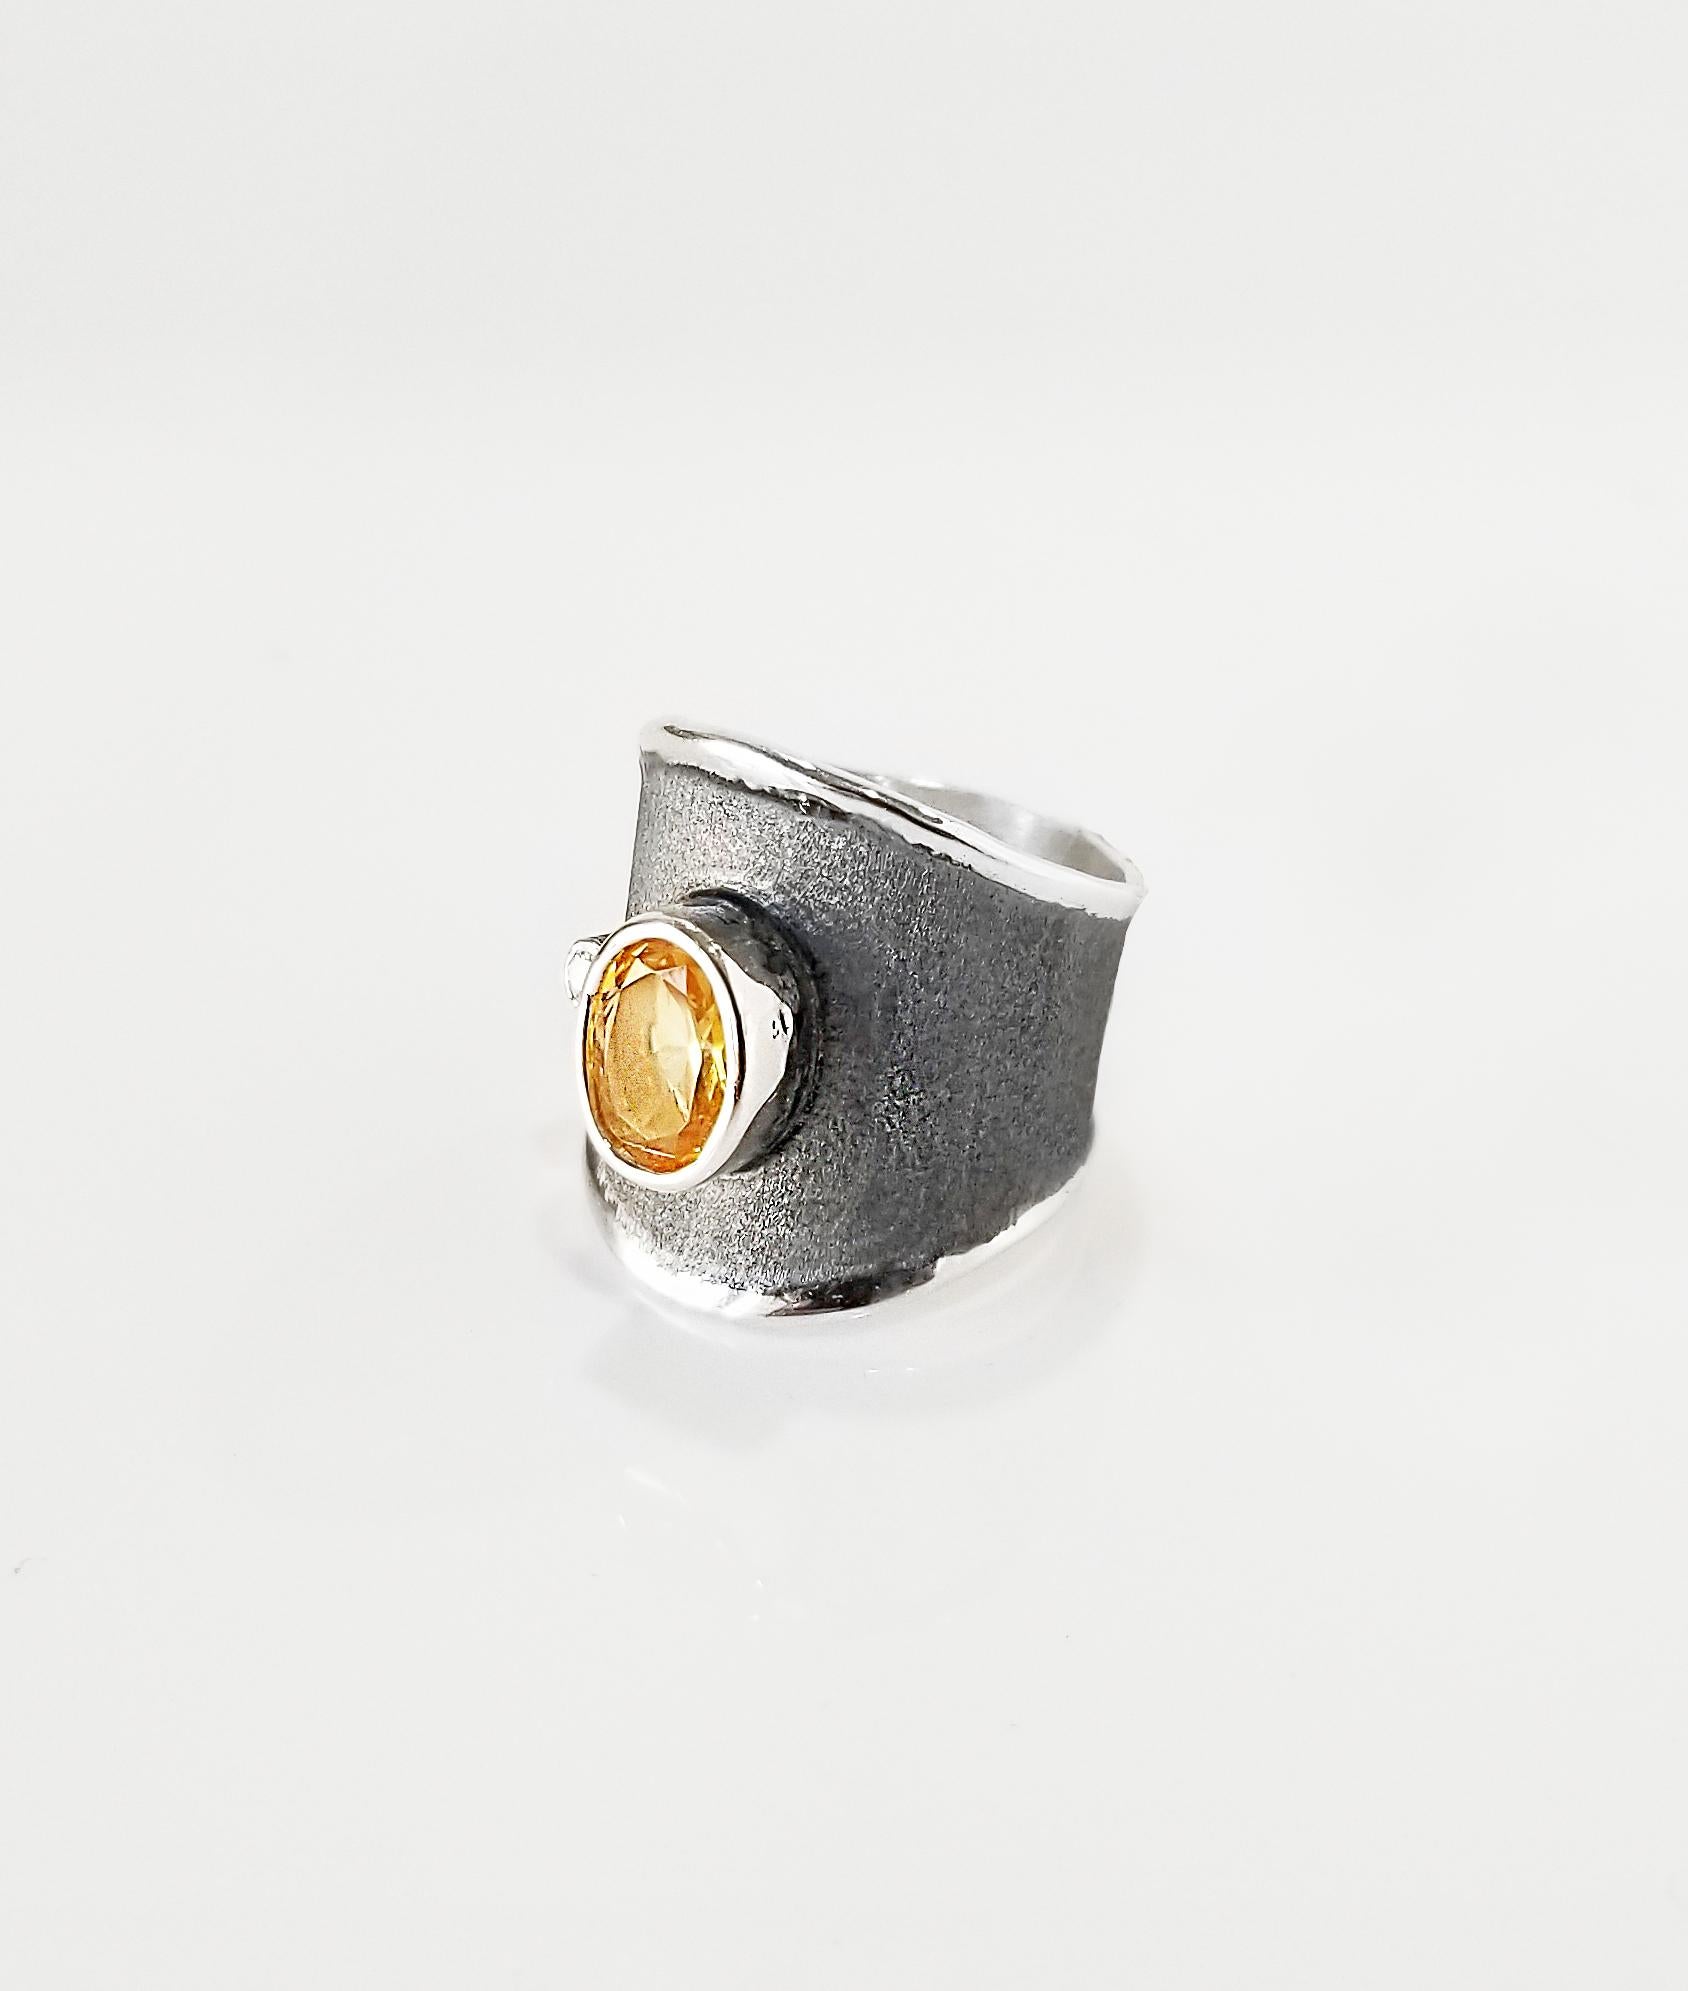 Yianni Creations handgefertigter Ring mit breitem Band, hergestellt in Griechenland für die Hephestos Collection. Dieser wunderschöne, handgefertigte Ring ist aus reinem 950er Silber gefertigt und mit Palladium beschichtet, um den Elementen zu